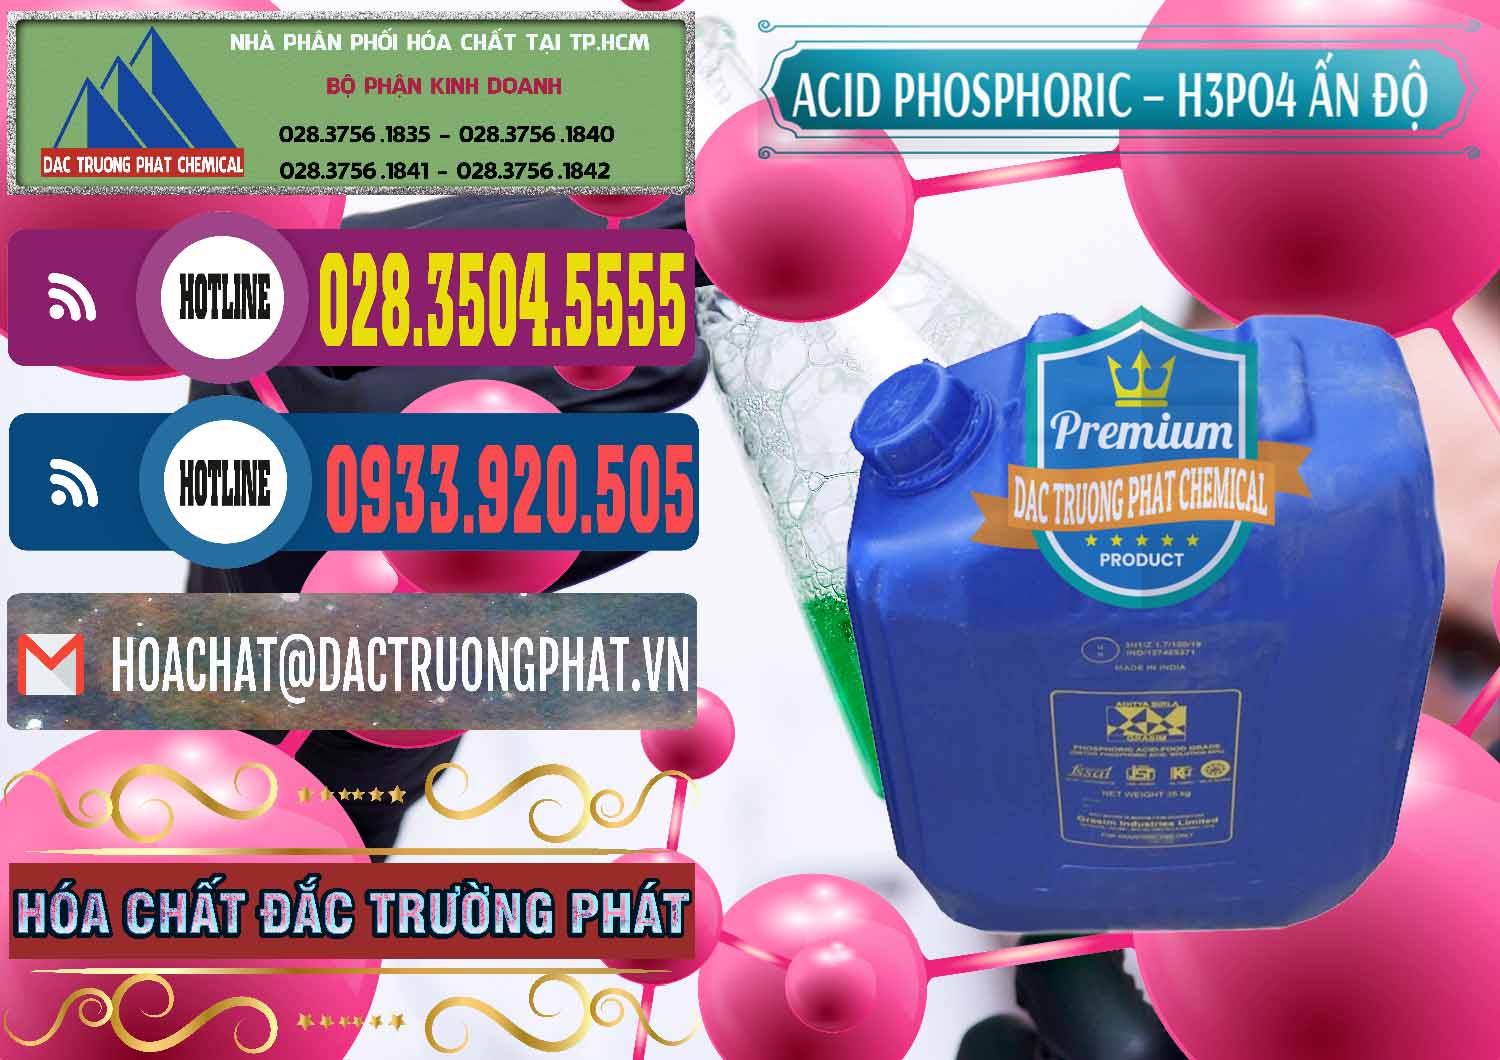 Công ty bán _ cung cấp Axit Phosphoric H3PO4 85% Ấn Độ - 0350 - Cty chuyên cung cấp và nhập khẩu hóa chất tại TP.HCM - muabanhoachat.com.vn